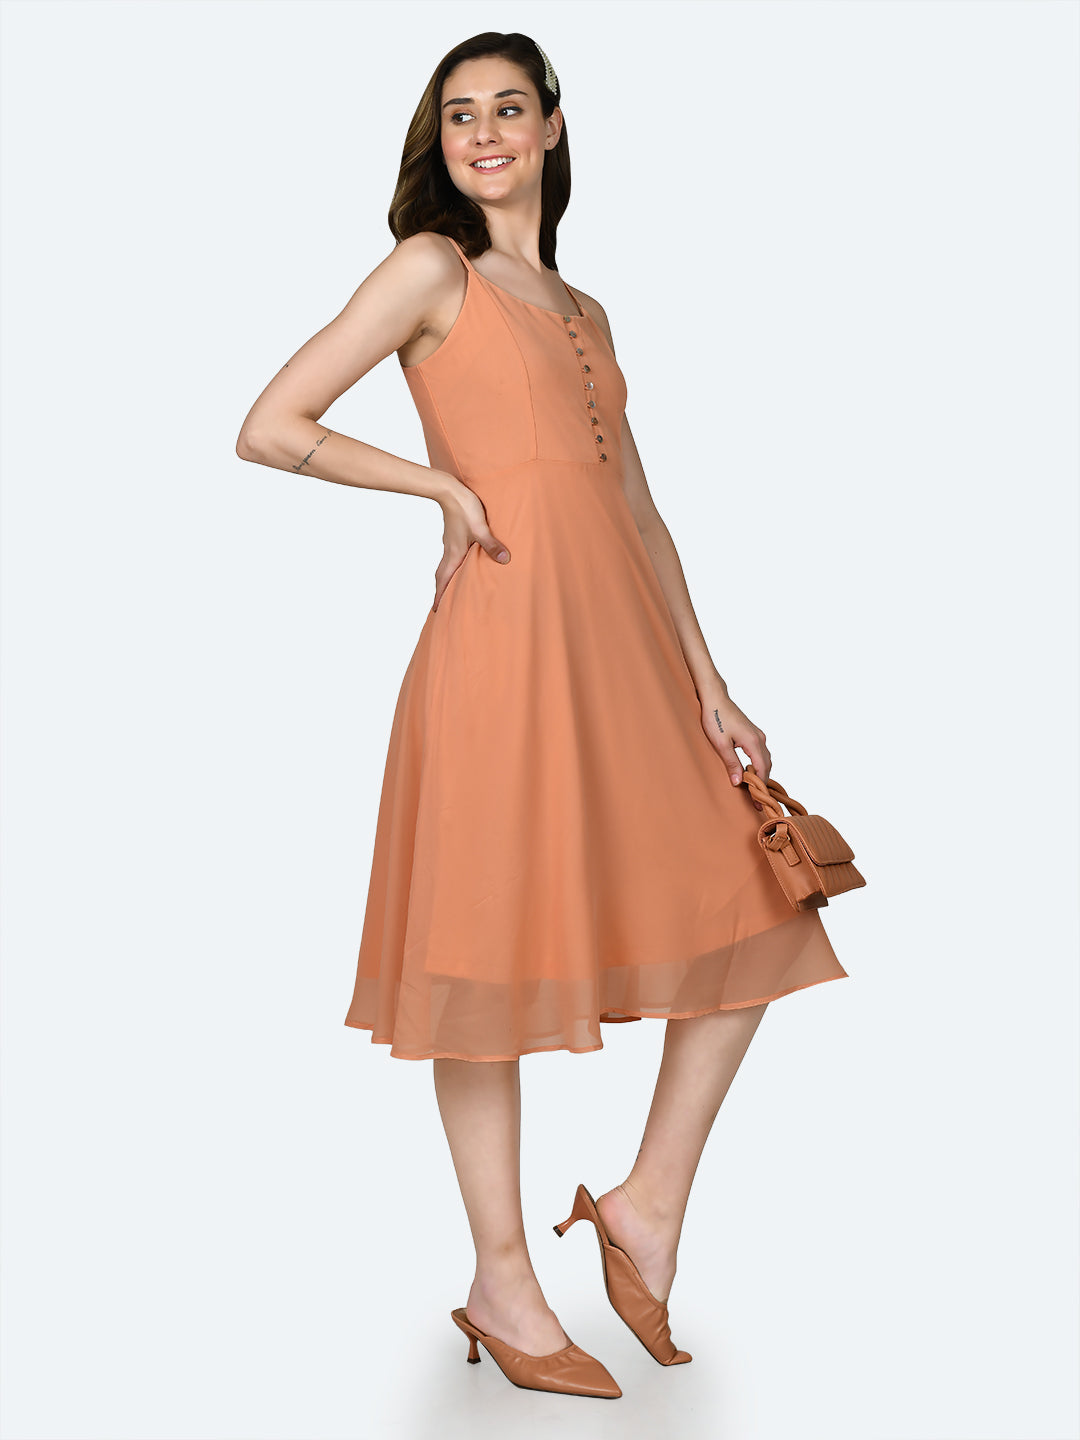 Orange Solid Strappy Midi Dress For Women